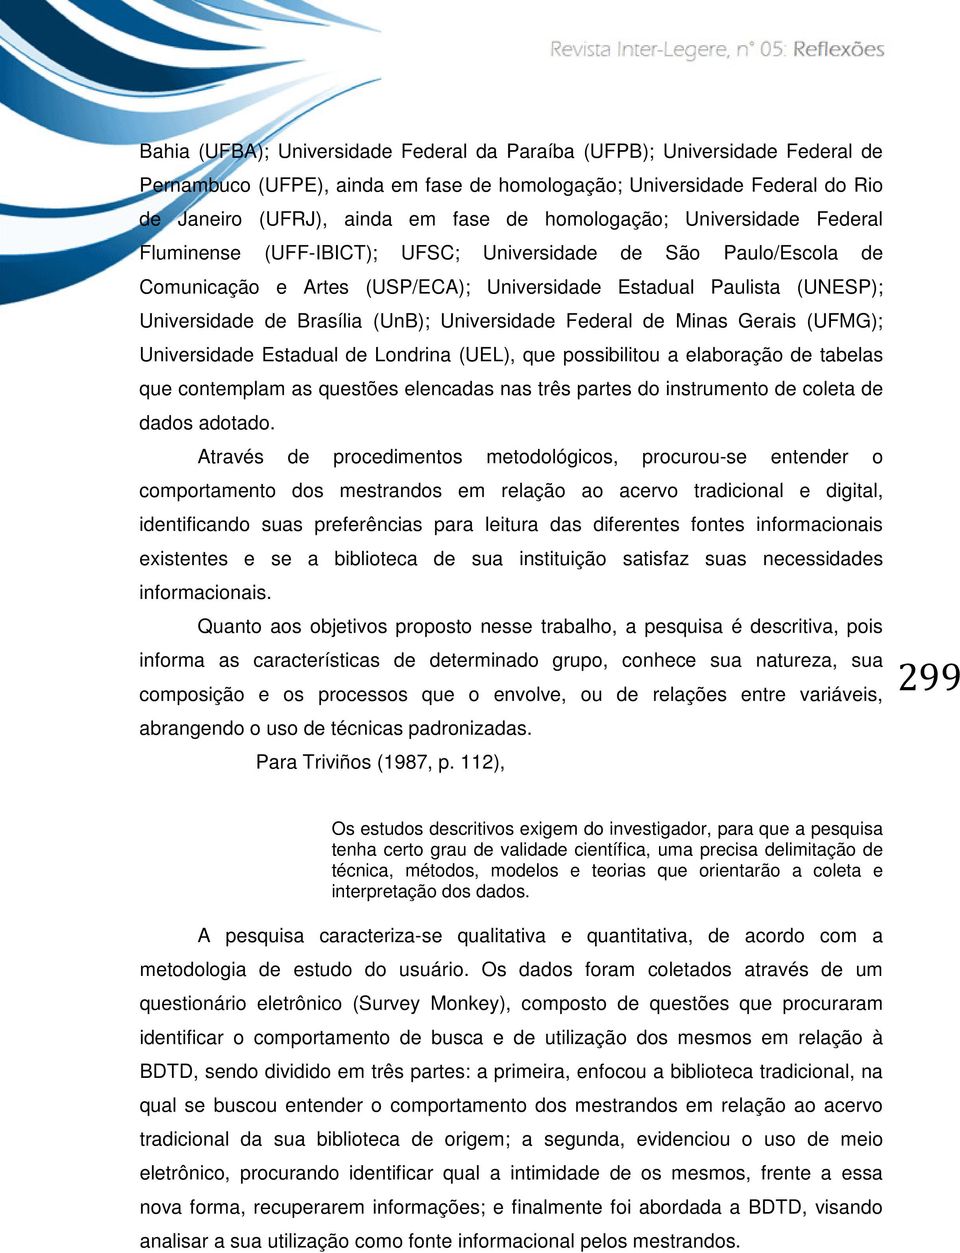 (UnB); Universidade Federal de Minas Gerais (UFMG); Universidade Estadual de Londrina (UEL), que possibilitou a elaboração de tabelas que contemplam as questões elencadas nas três partes do